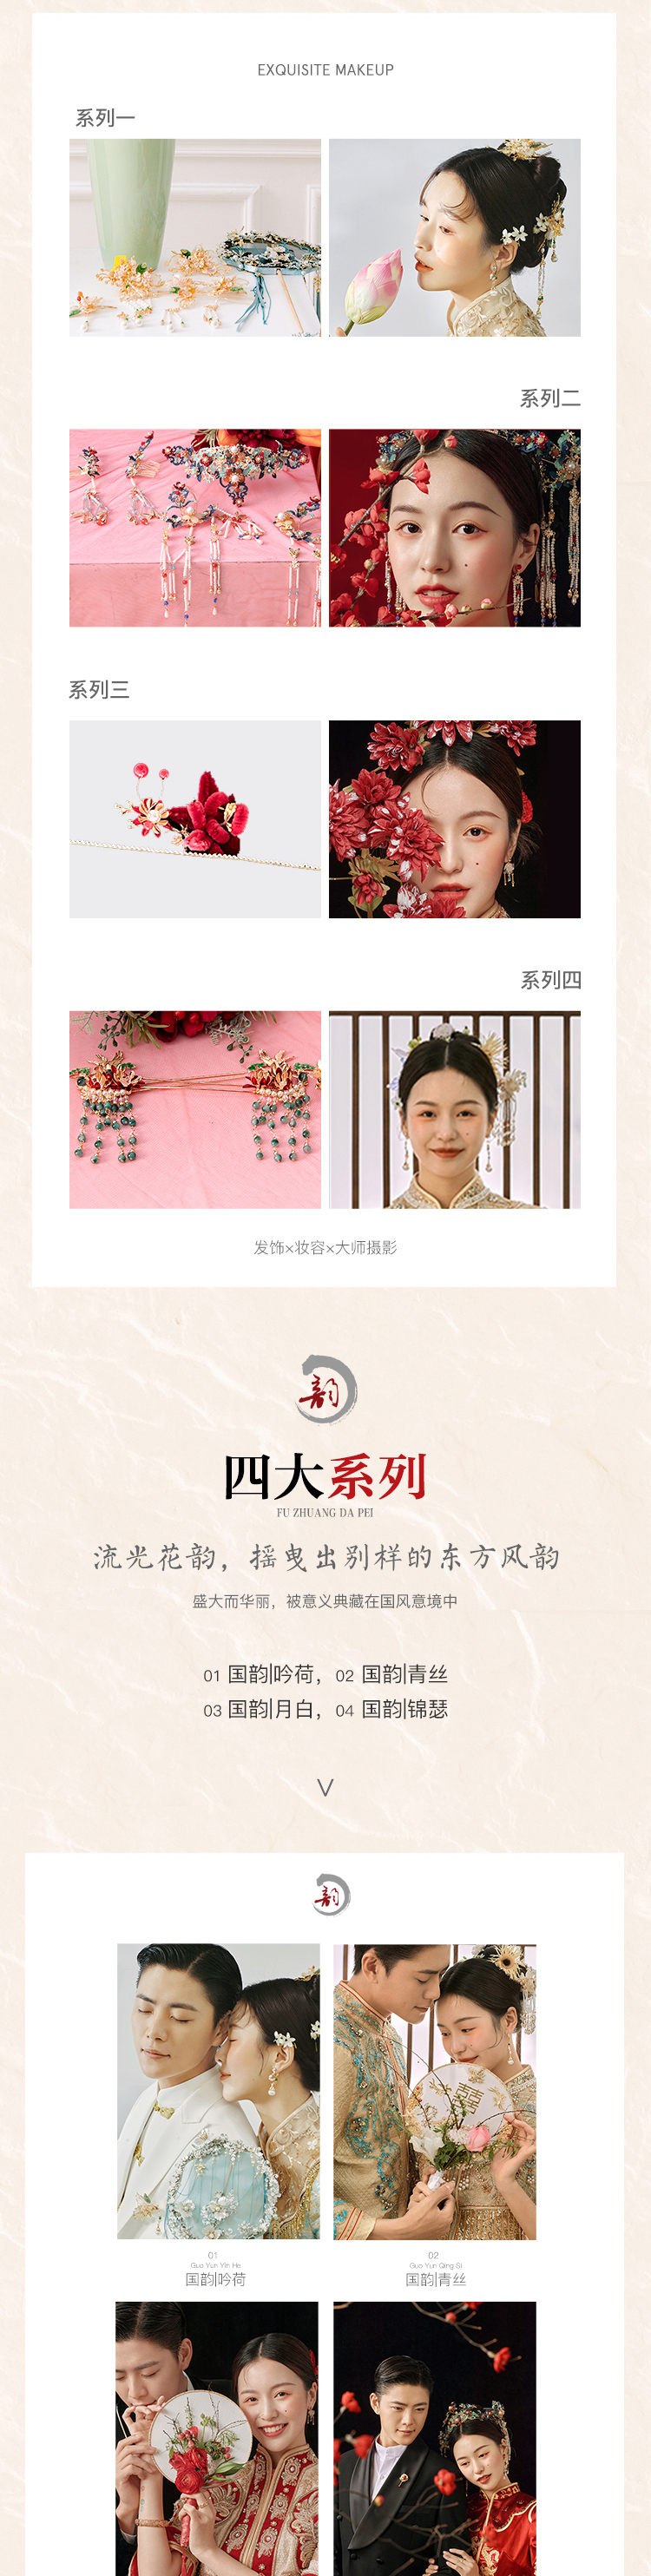 【传承经典】中式系列·实景拍摄婚纱照